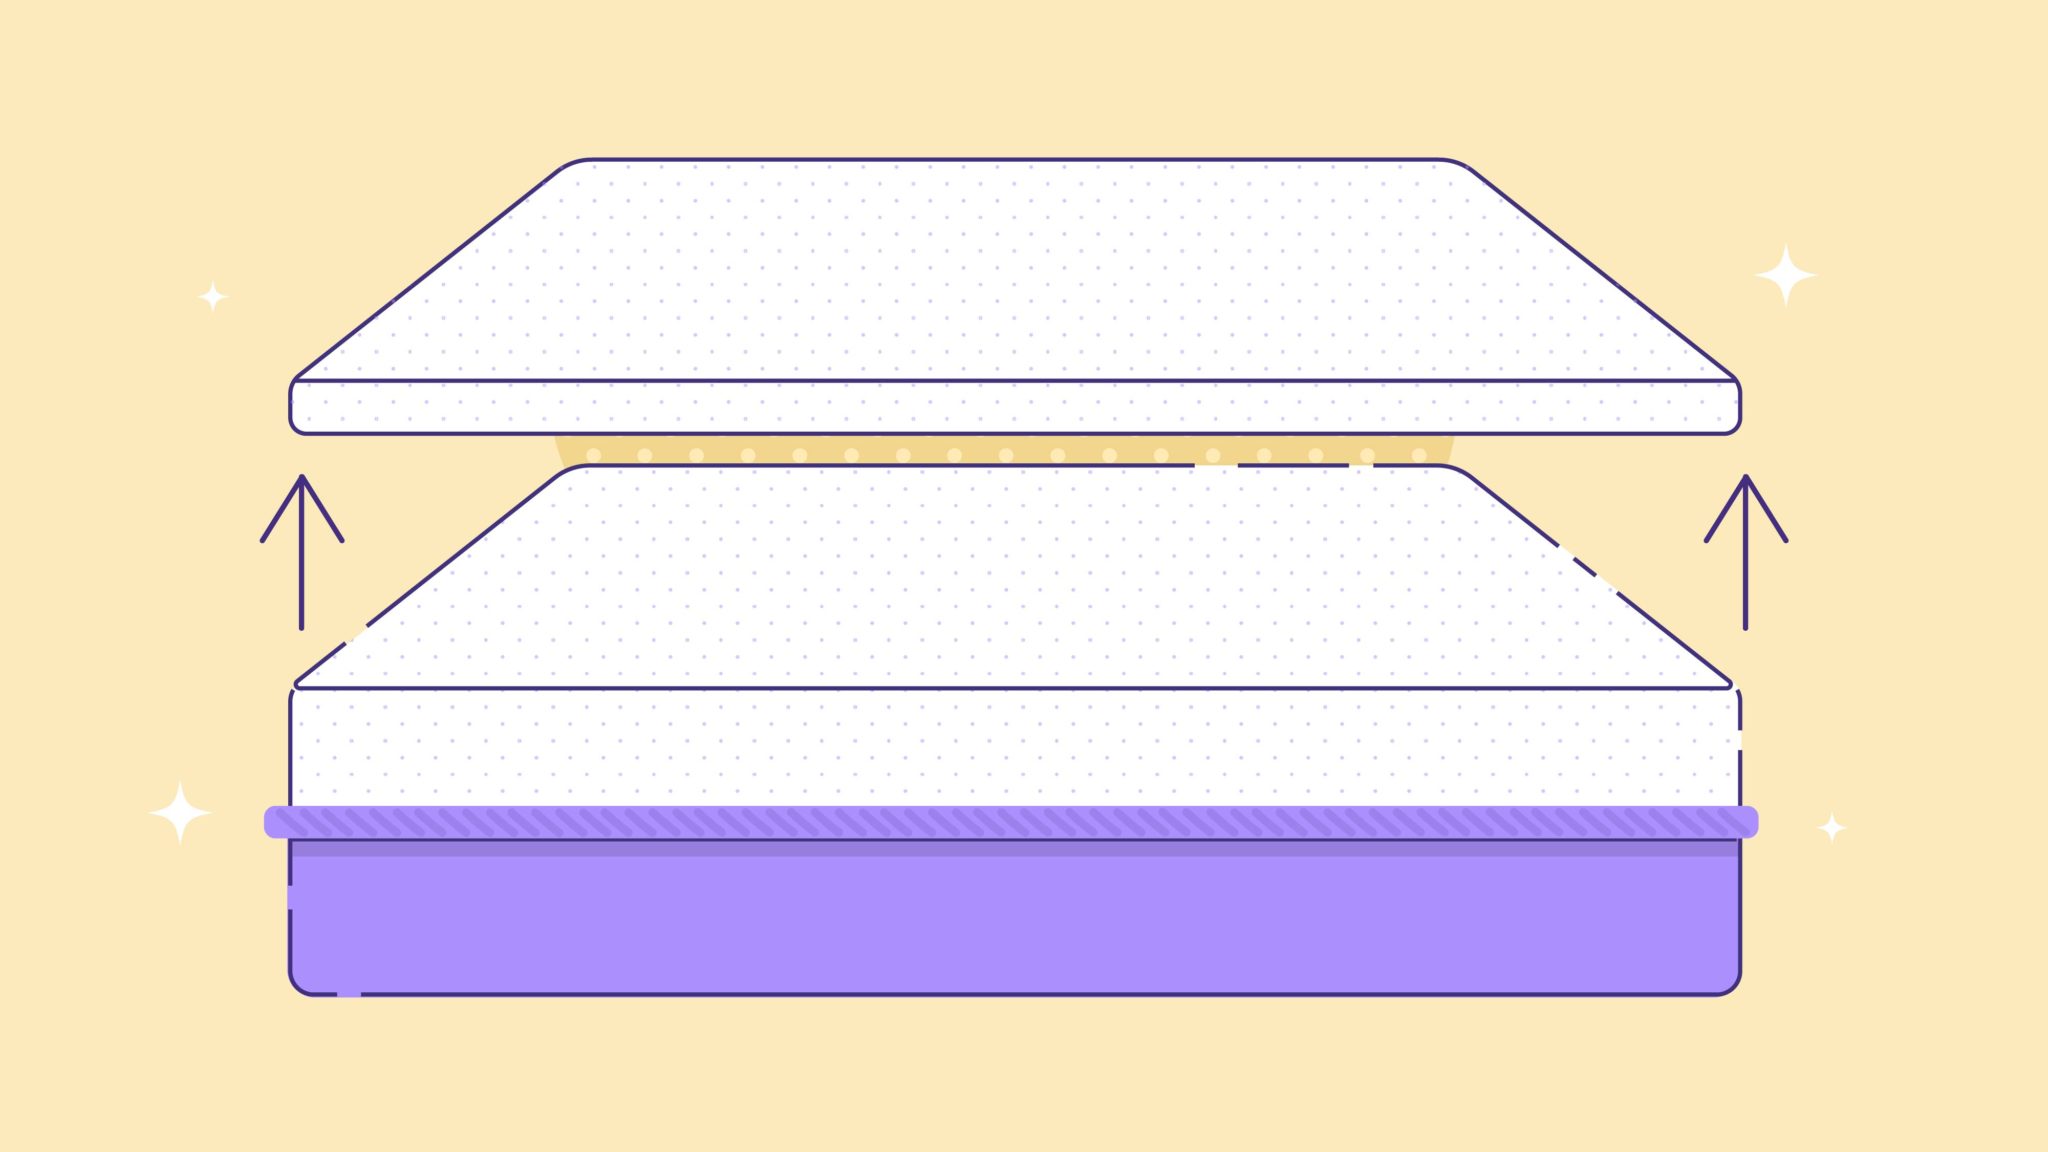 foam mattress topper problems